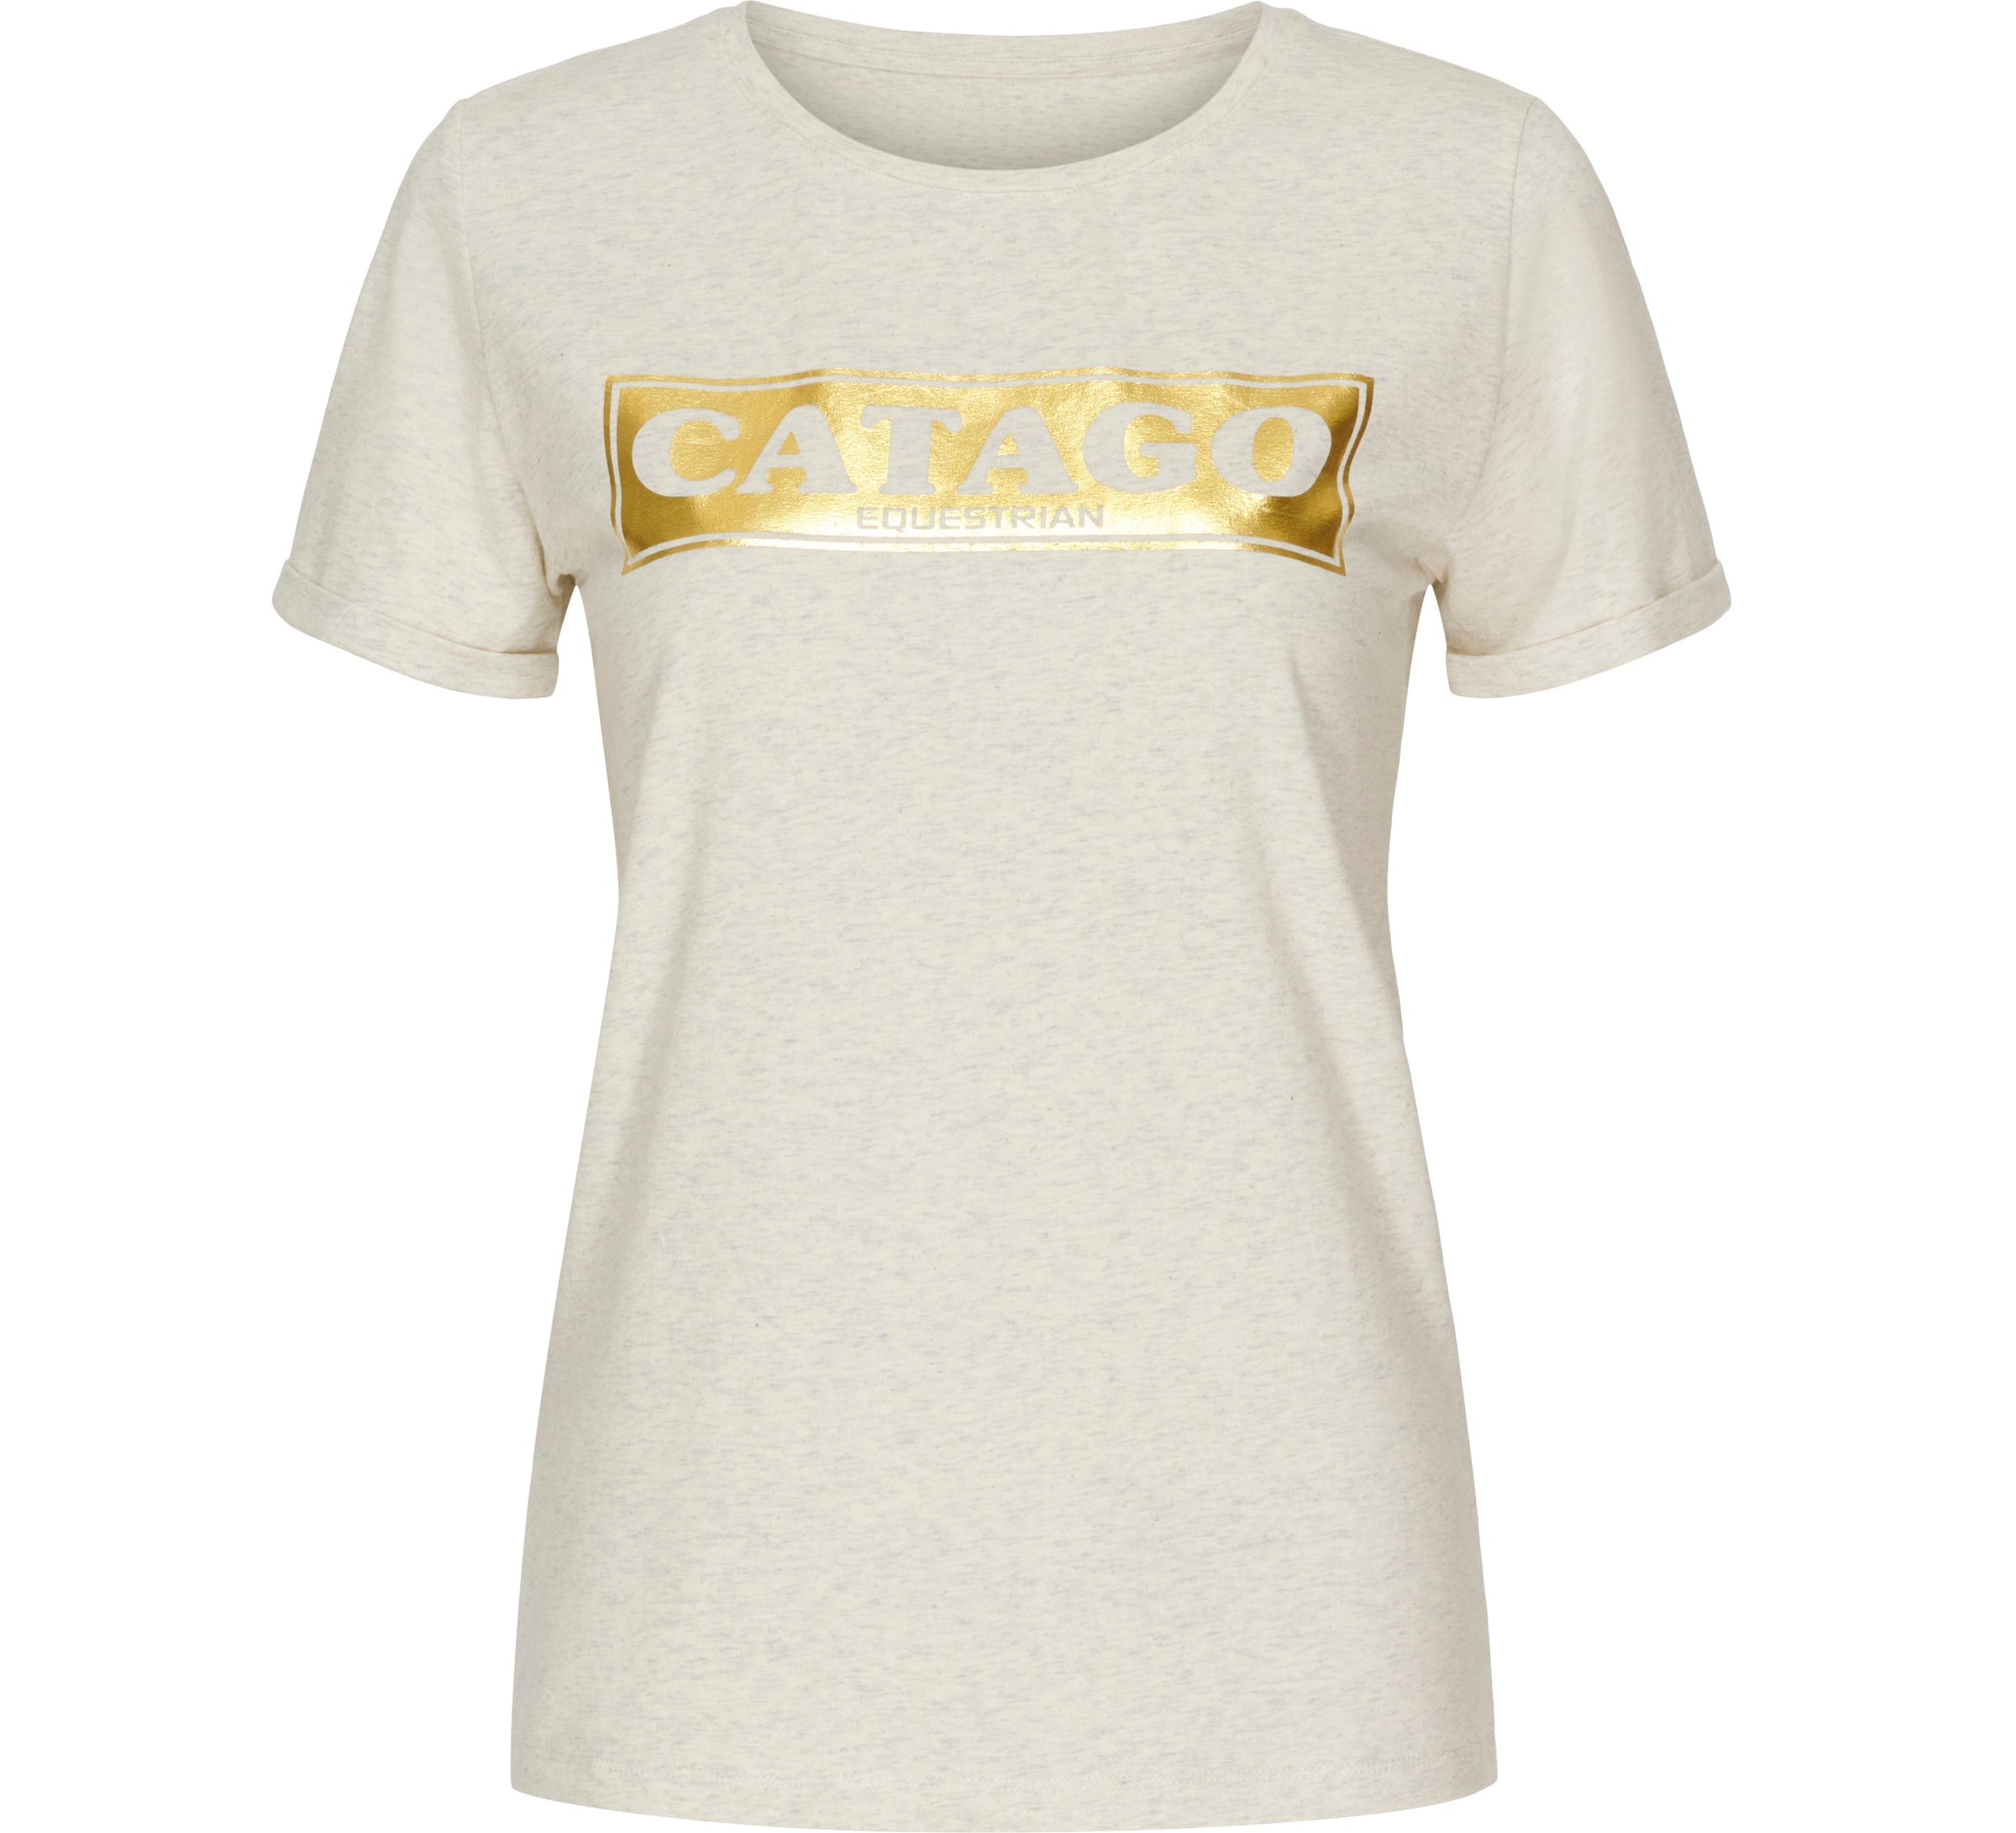 Catago Tyler Sandshell metallic t-shirt- 1 small left